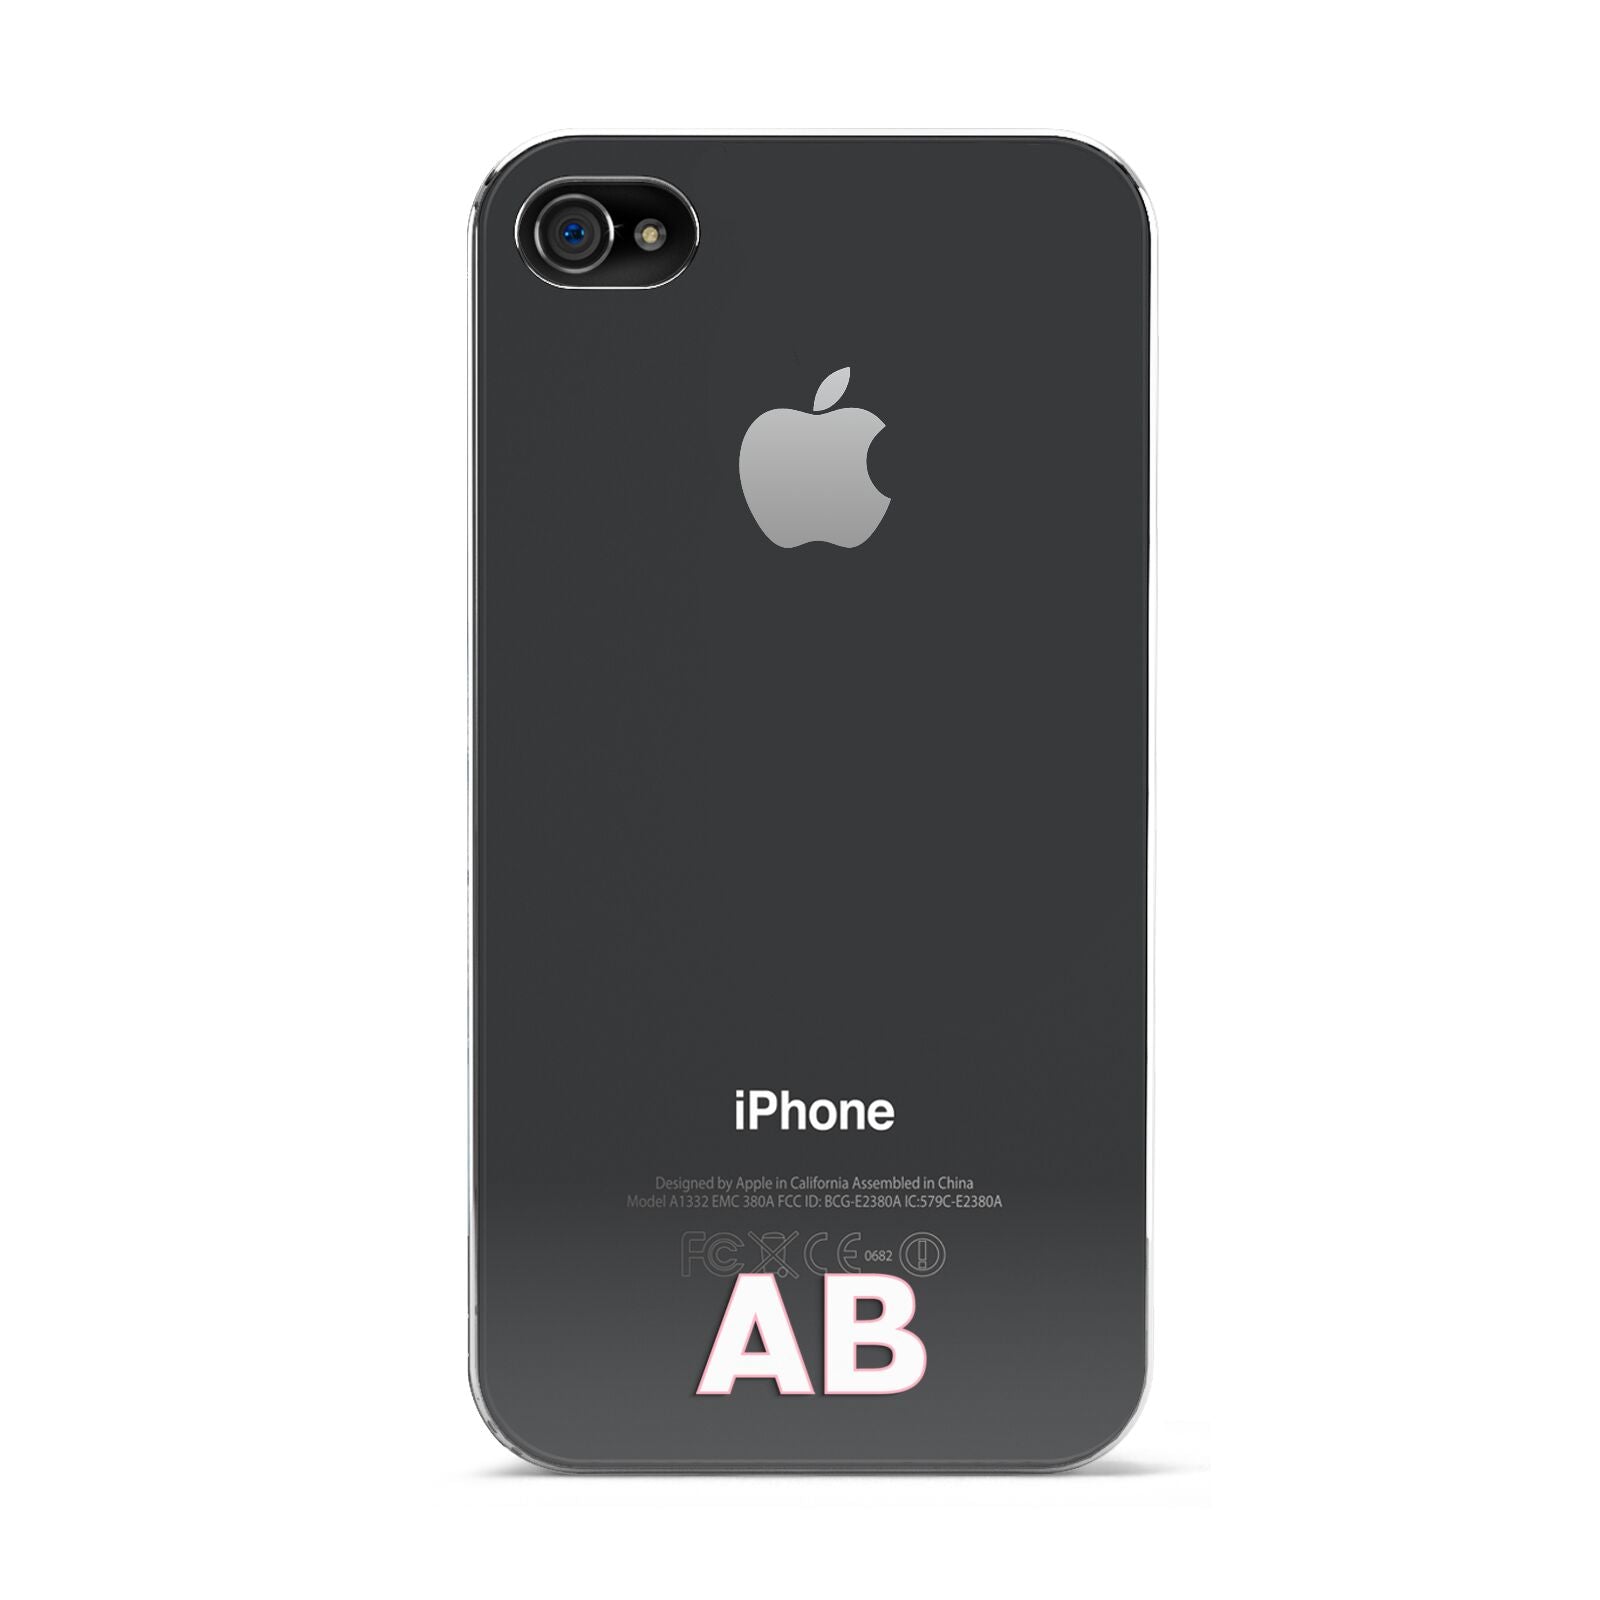 Sans Serif Initials Apple iPhone 4s Case